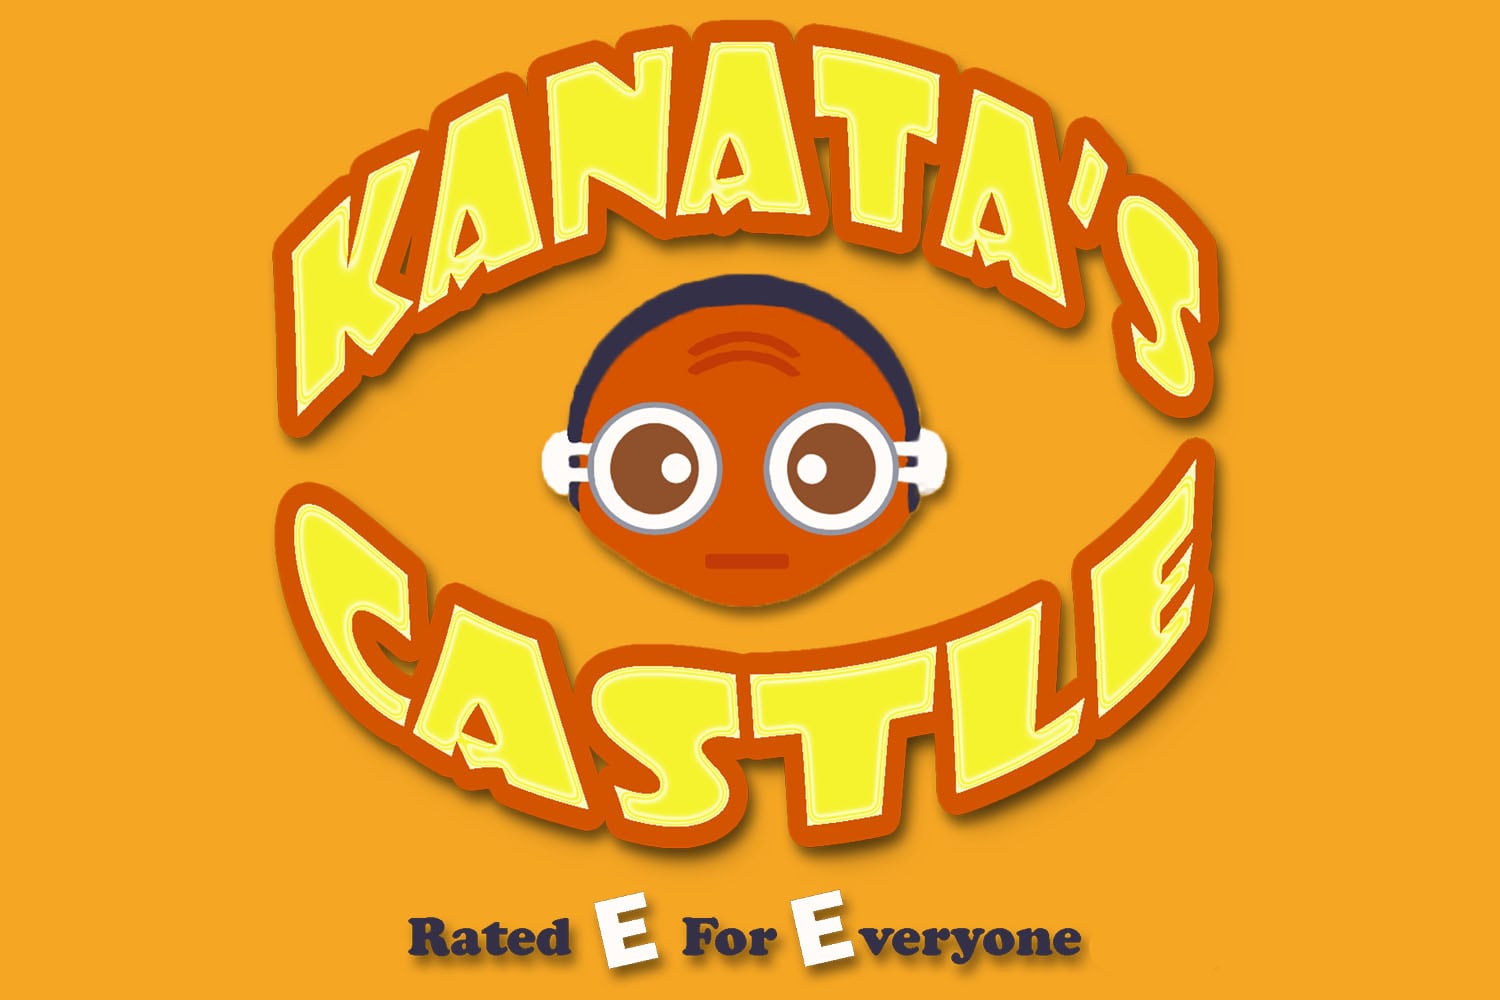 Kanata's Castle